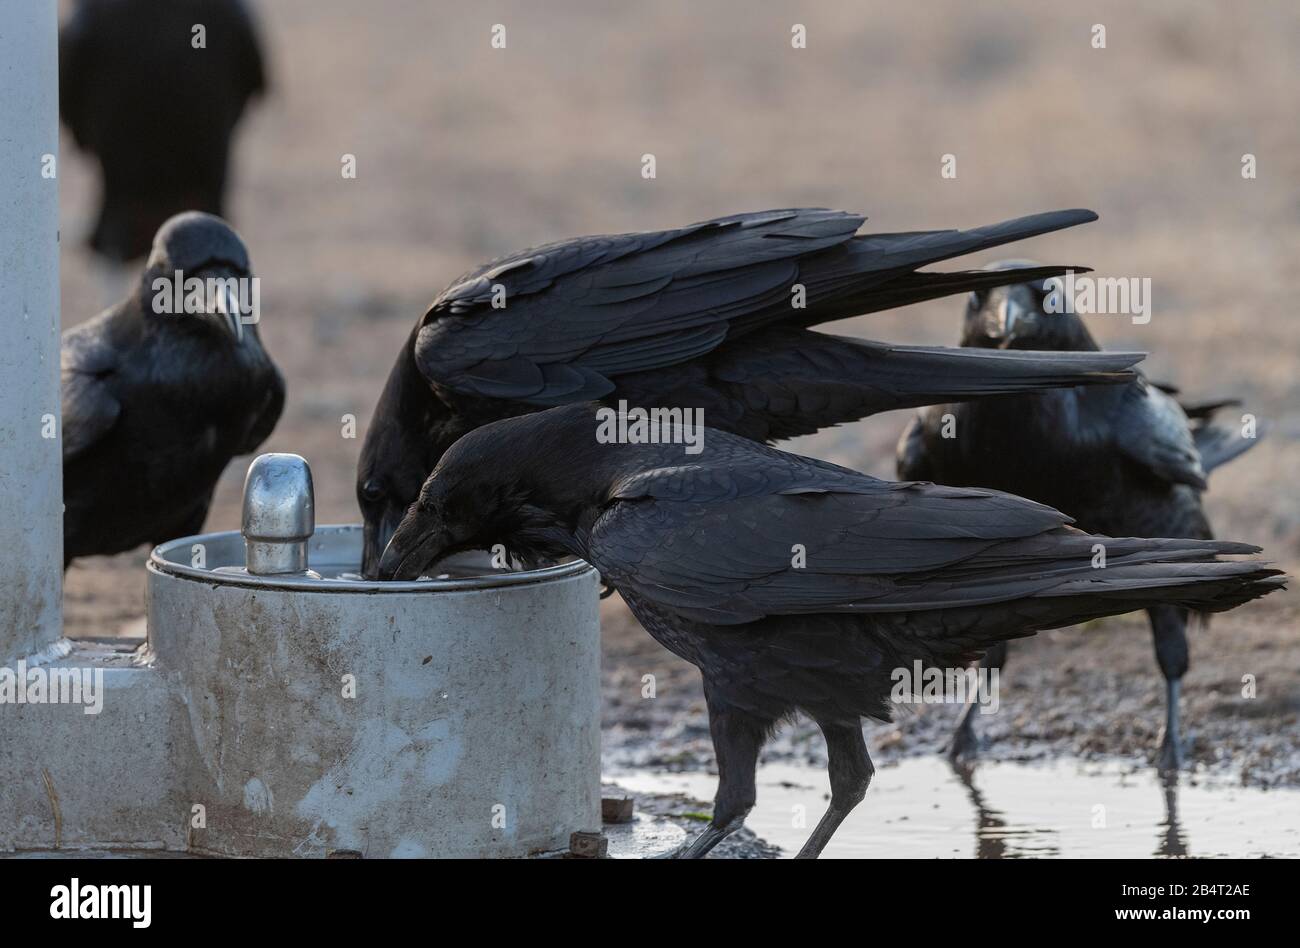 Raven, Corvus corax, boire à l'arrivée d'eau dans le parking, avant le repos du soir. Californie. Banque D'Images